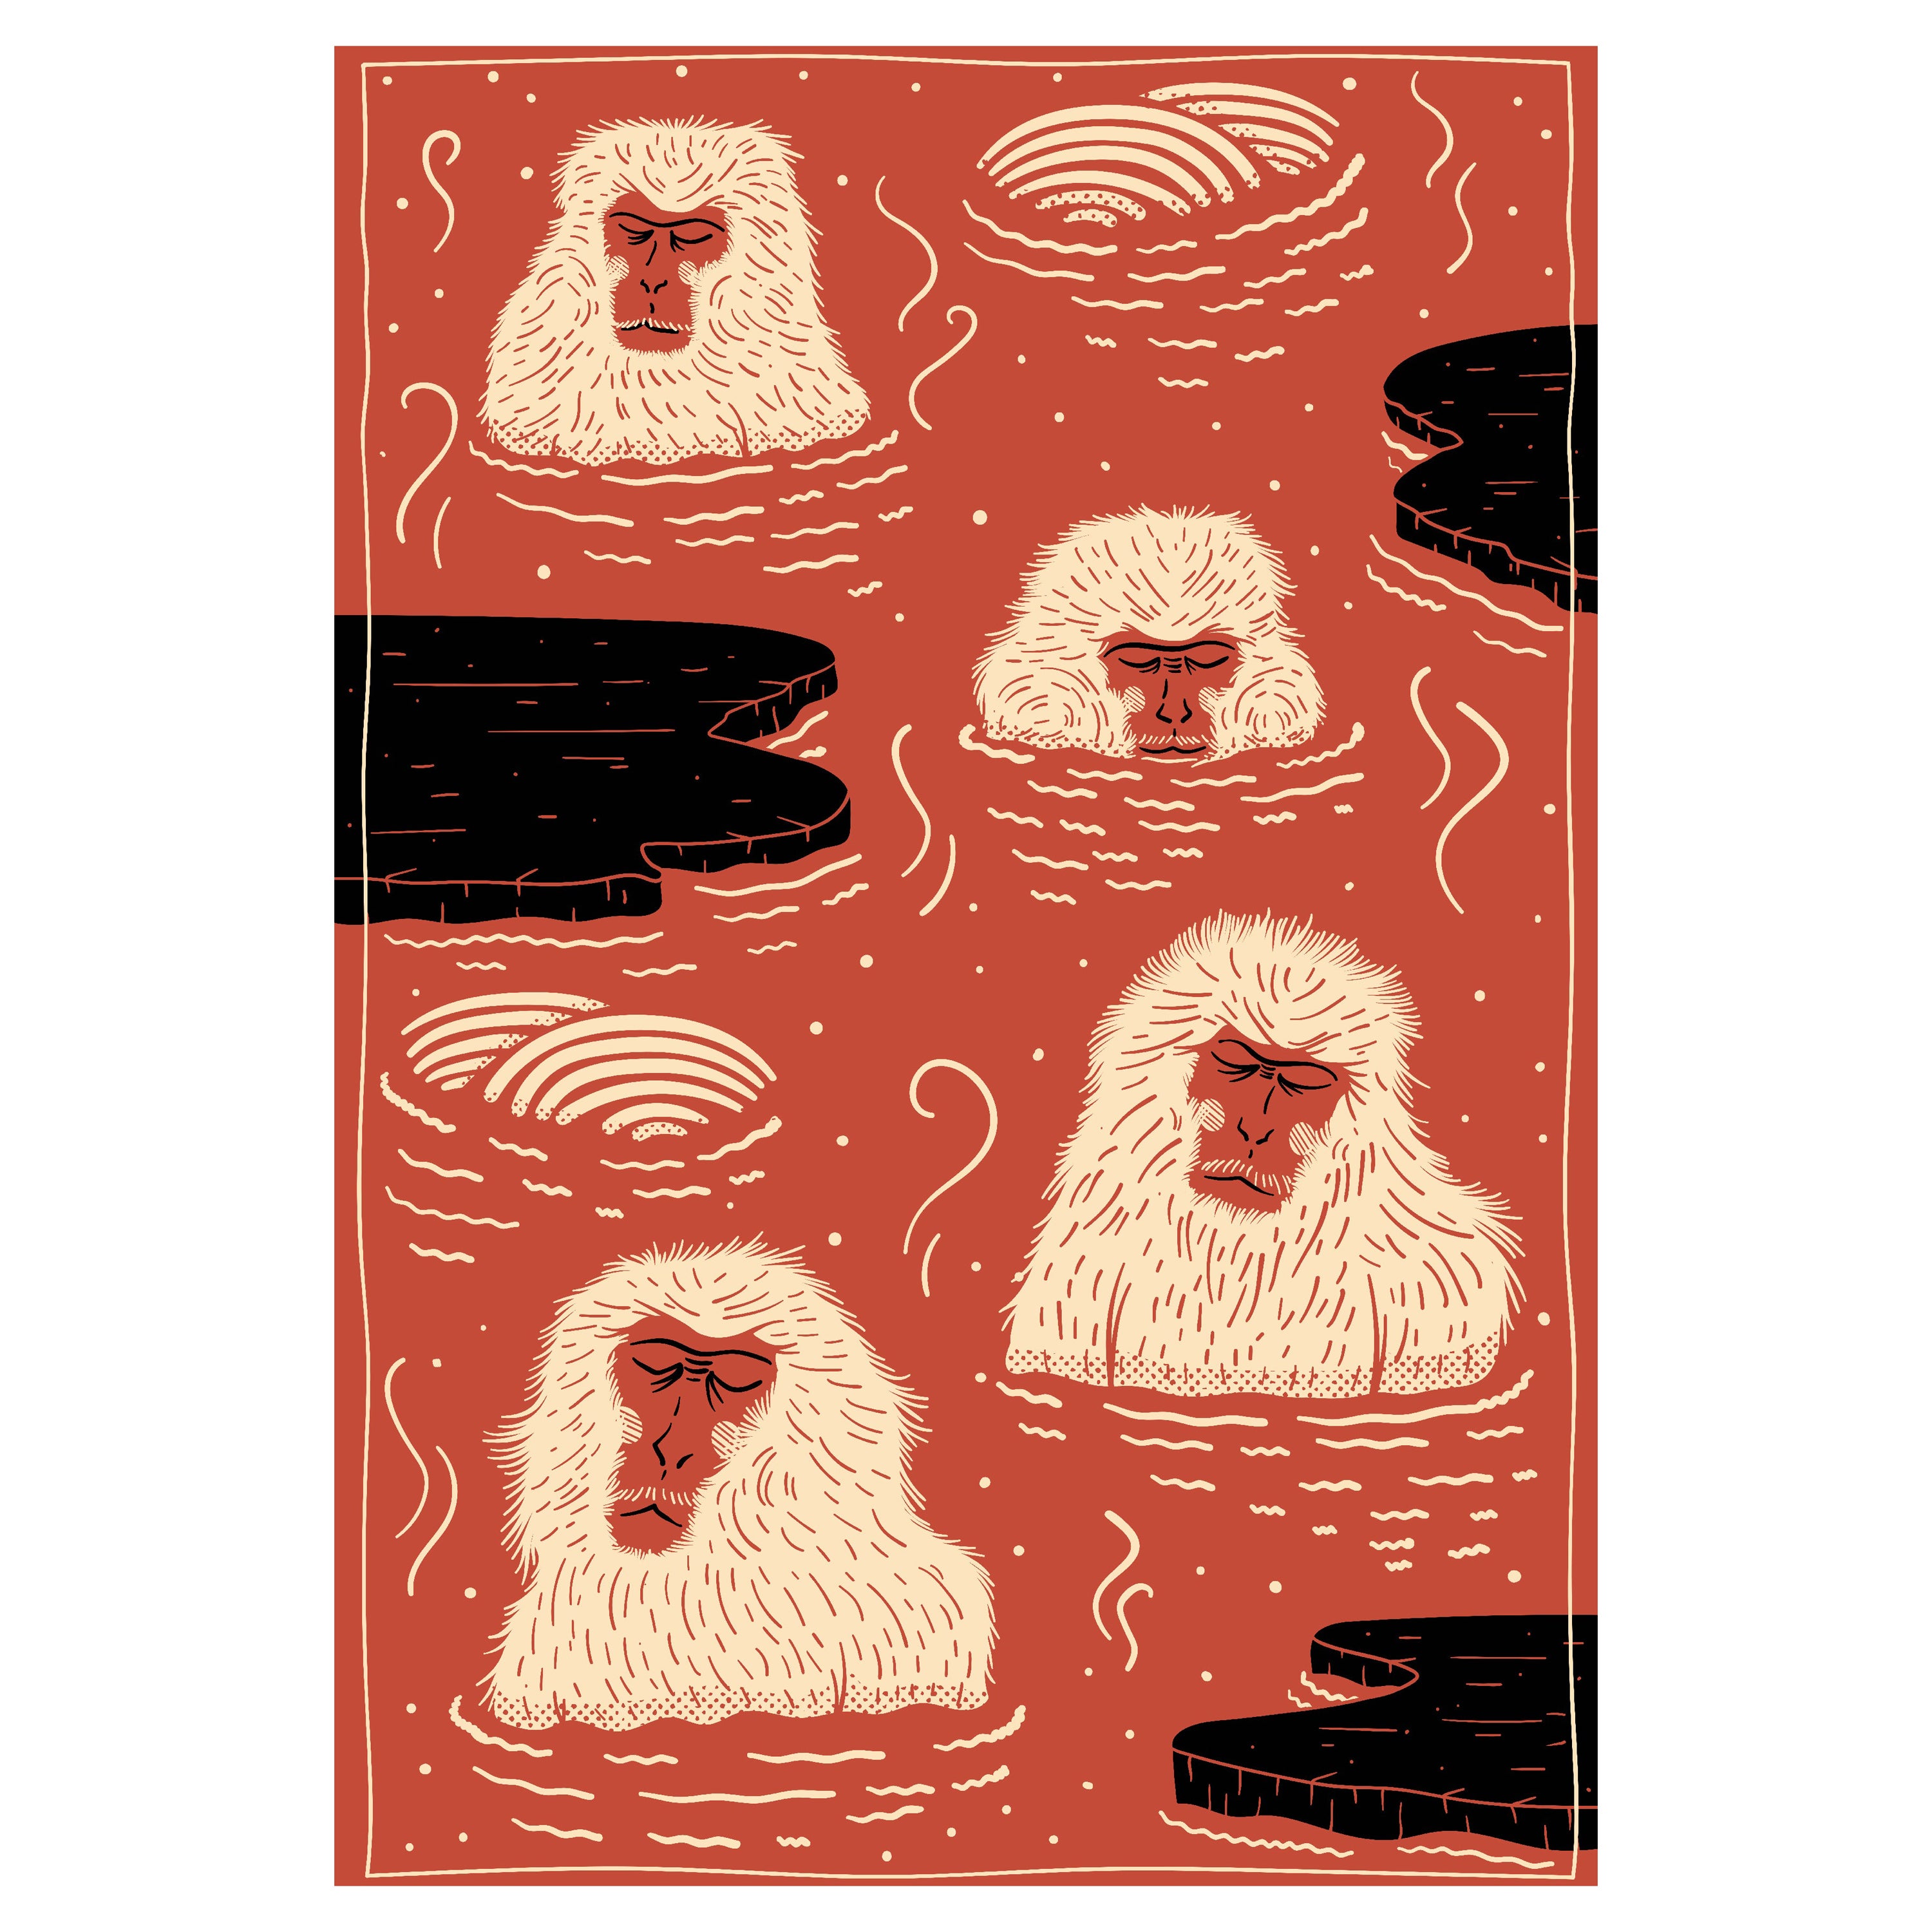 Indigofarbener, kaukasischer roter Teppich aus Wolle mit ausgestorbenen Tieren